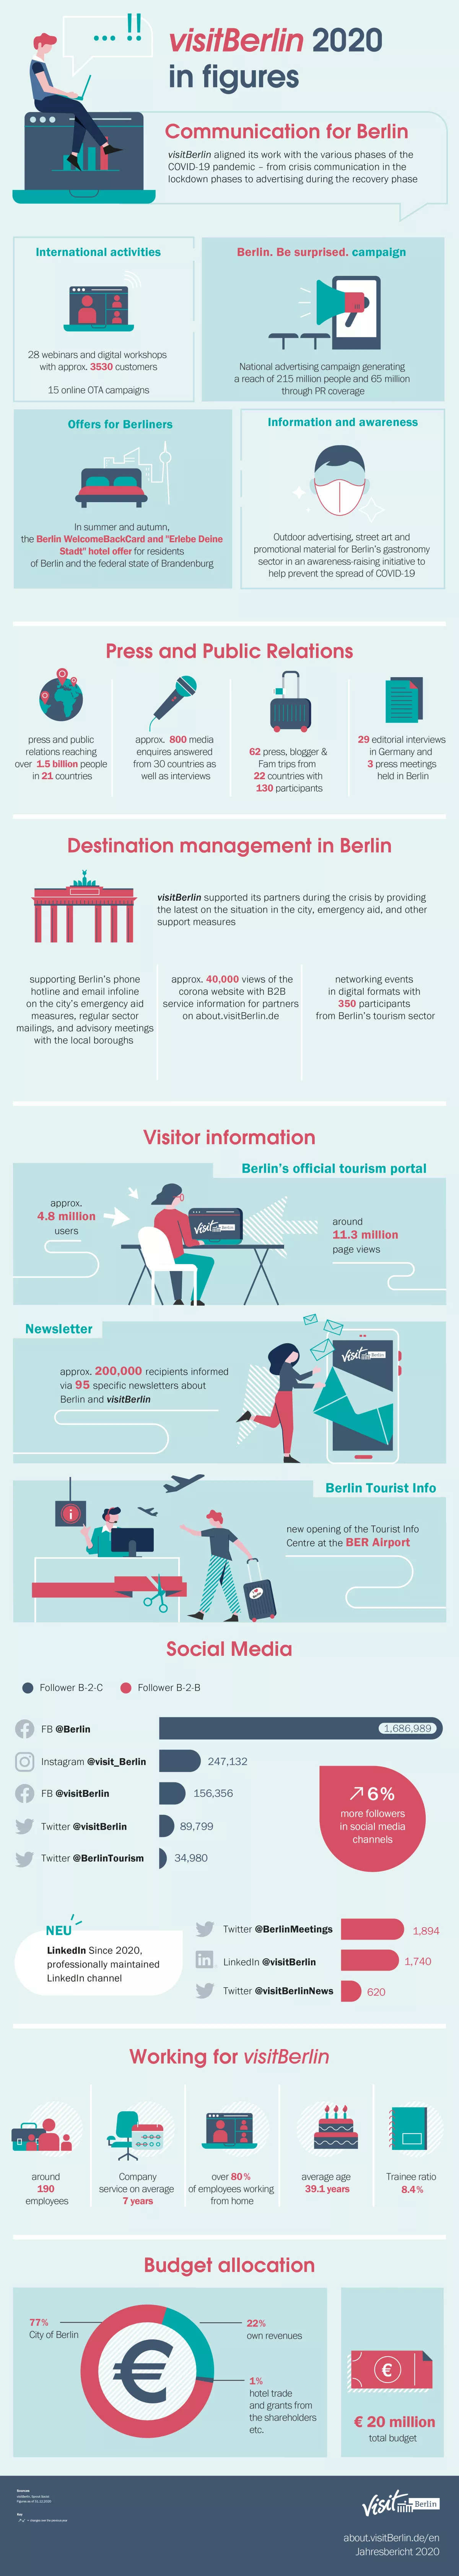 Infografik visitBerlin in Zahlen 2020